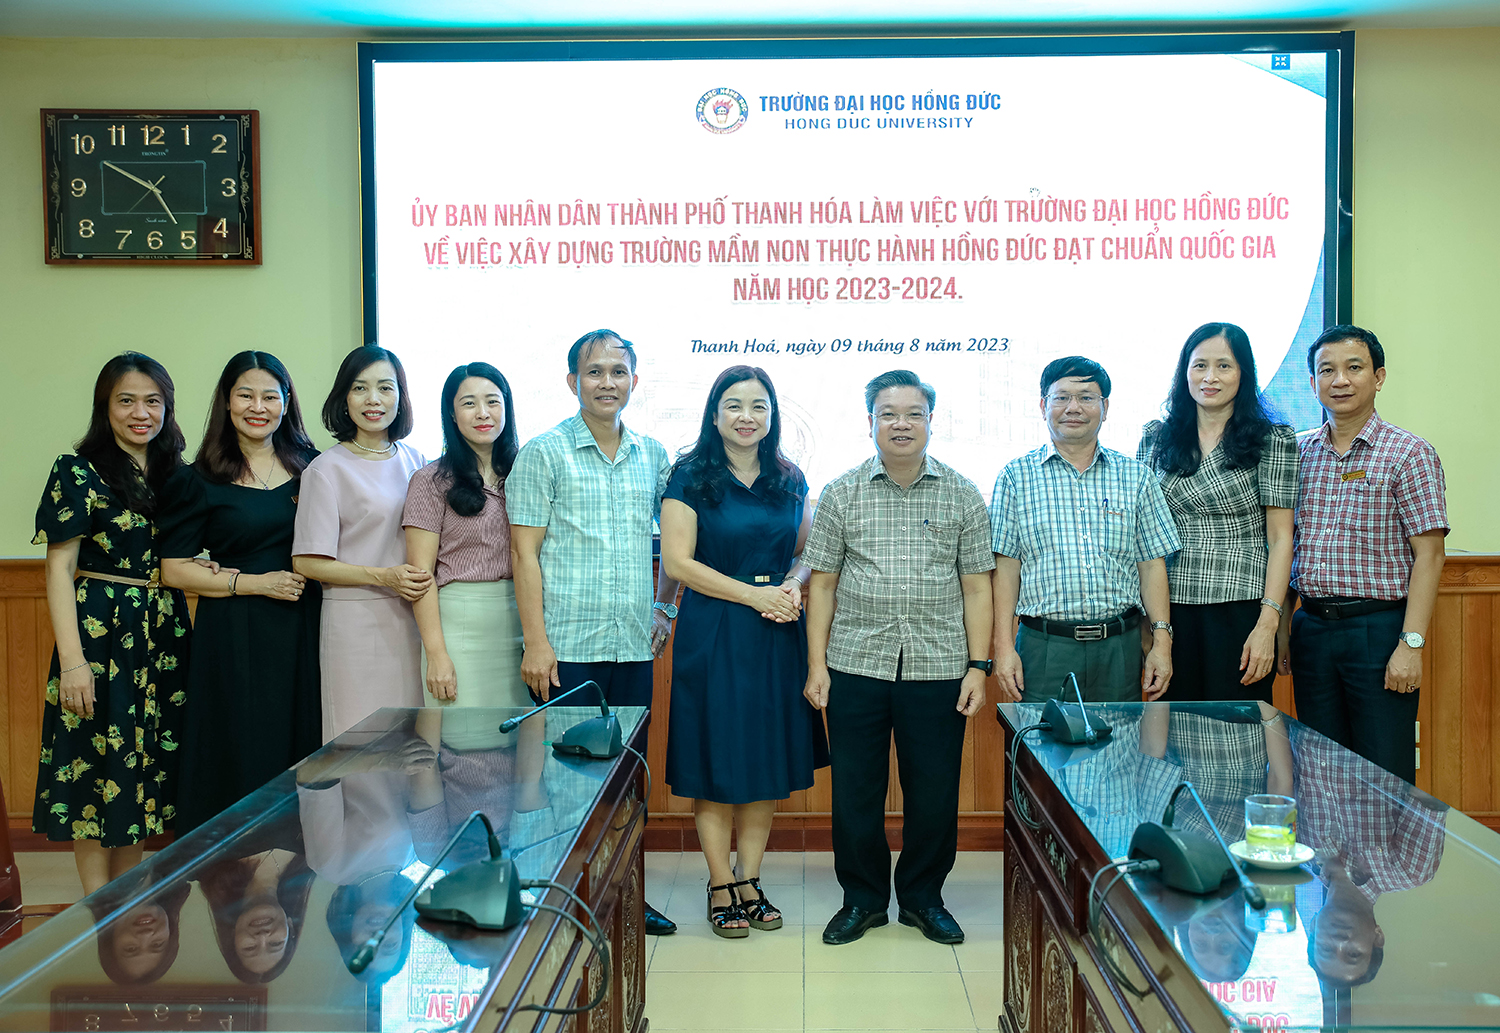 Uỷ ban Nhân dân thành phố Thanh Hoá làm việc với Trường Đại học Hồng Đức về việc xây dựng Trường Mầm non Thực hành đạt chuẩn quốc gia năm học 2023 – 2024